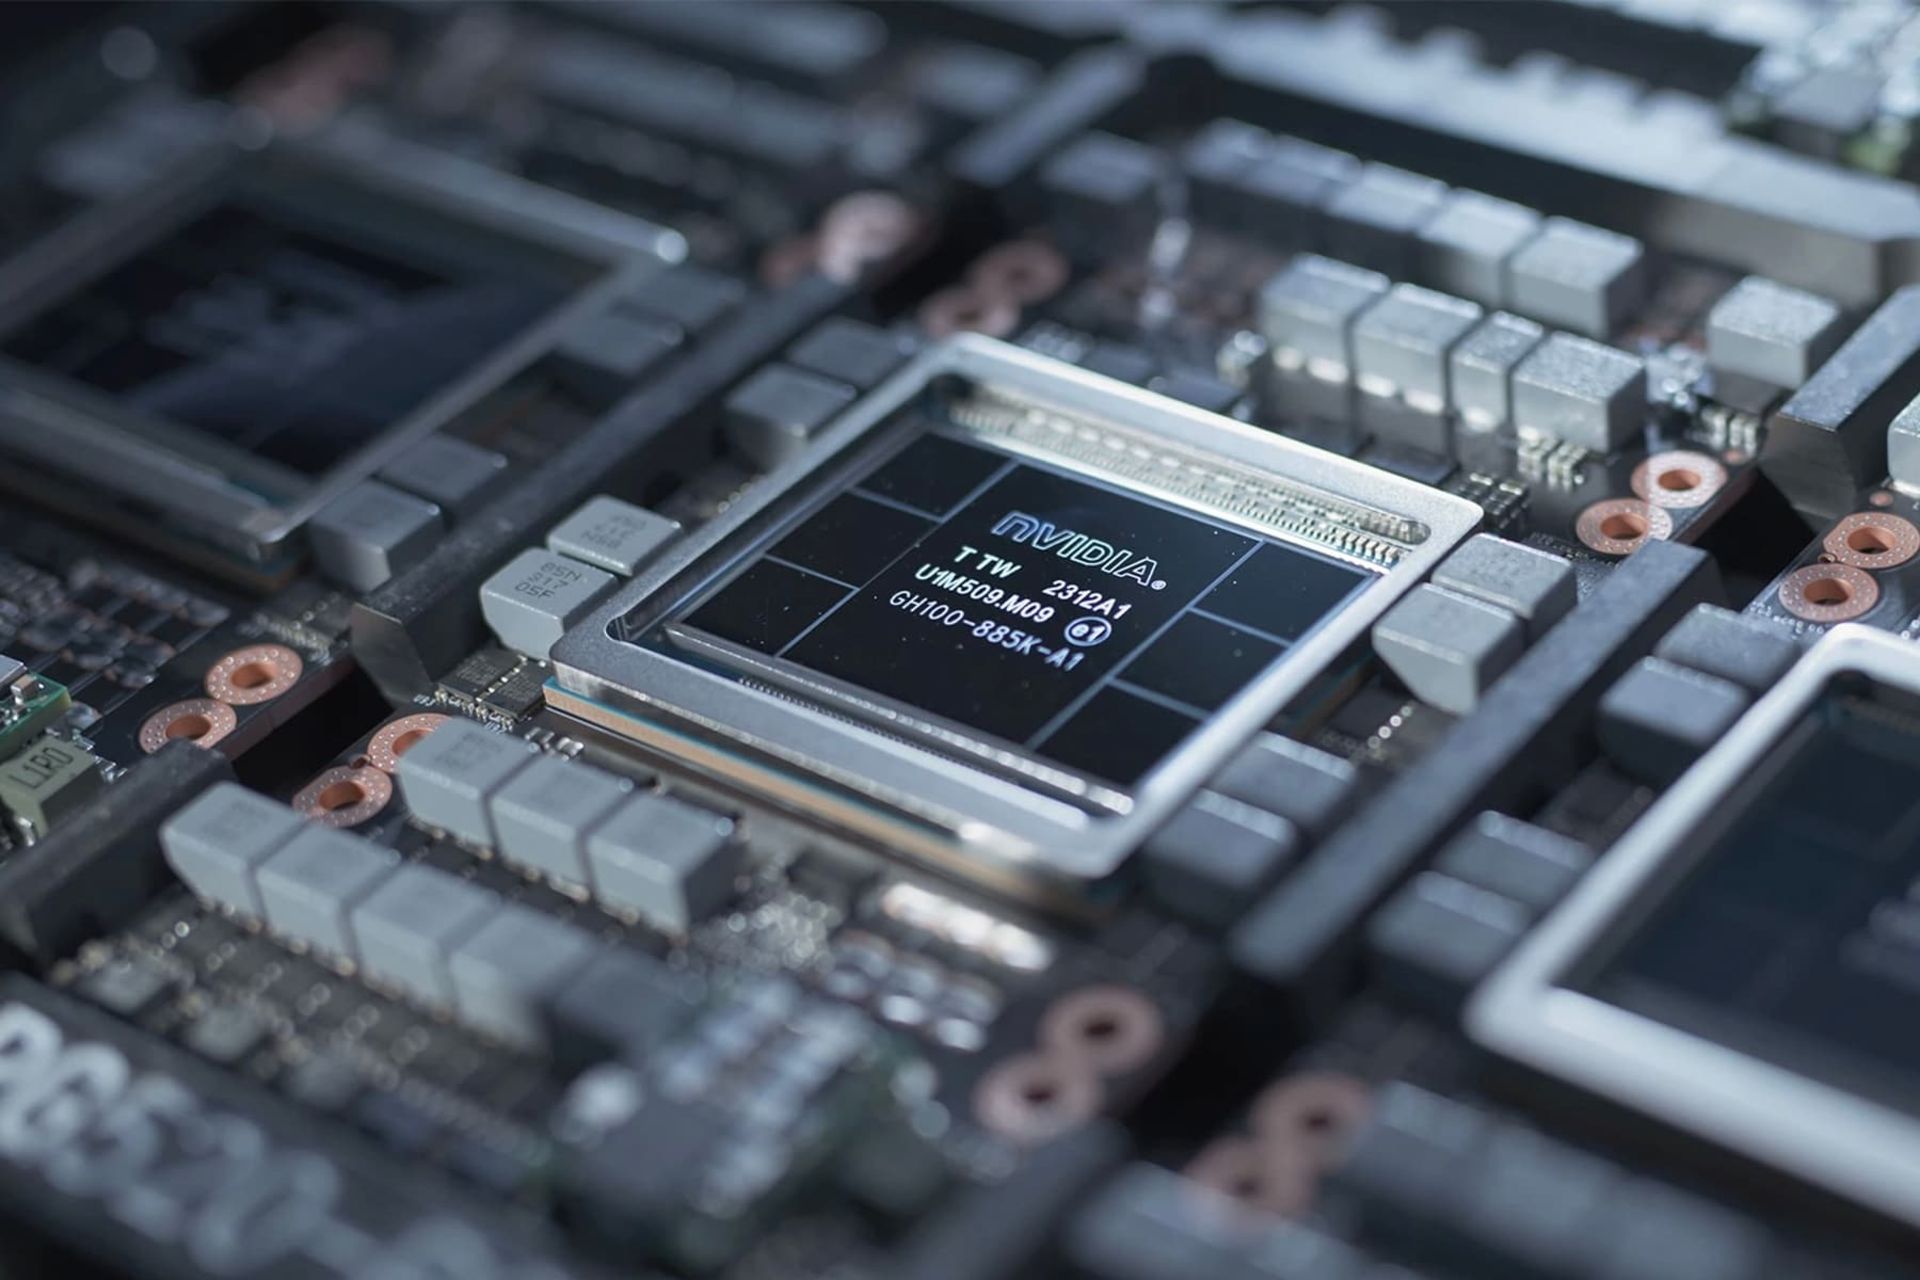 لوگو انویدیا / Nvidia روی پردازنده تراشه مشکی در داخل سیستم